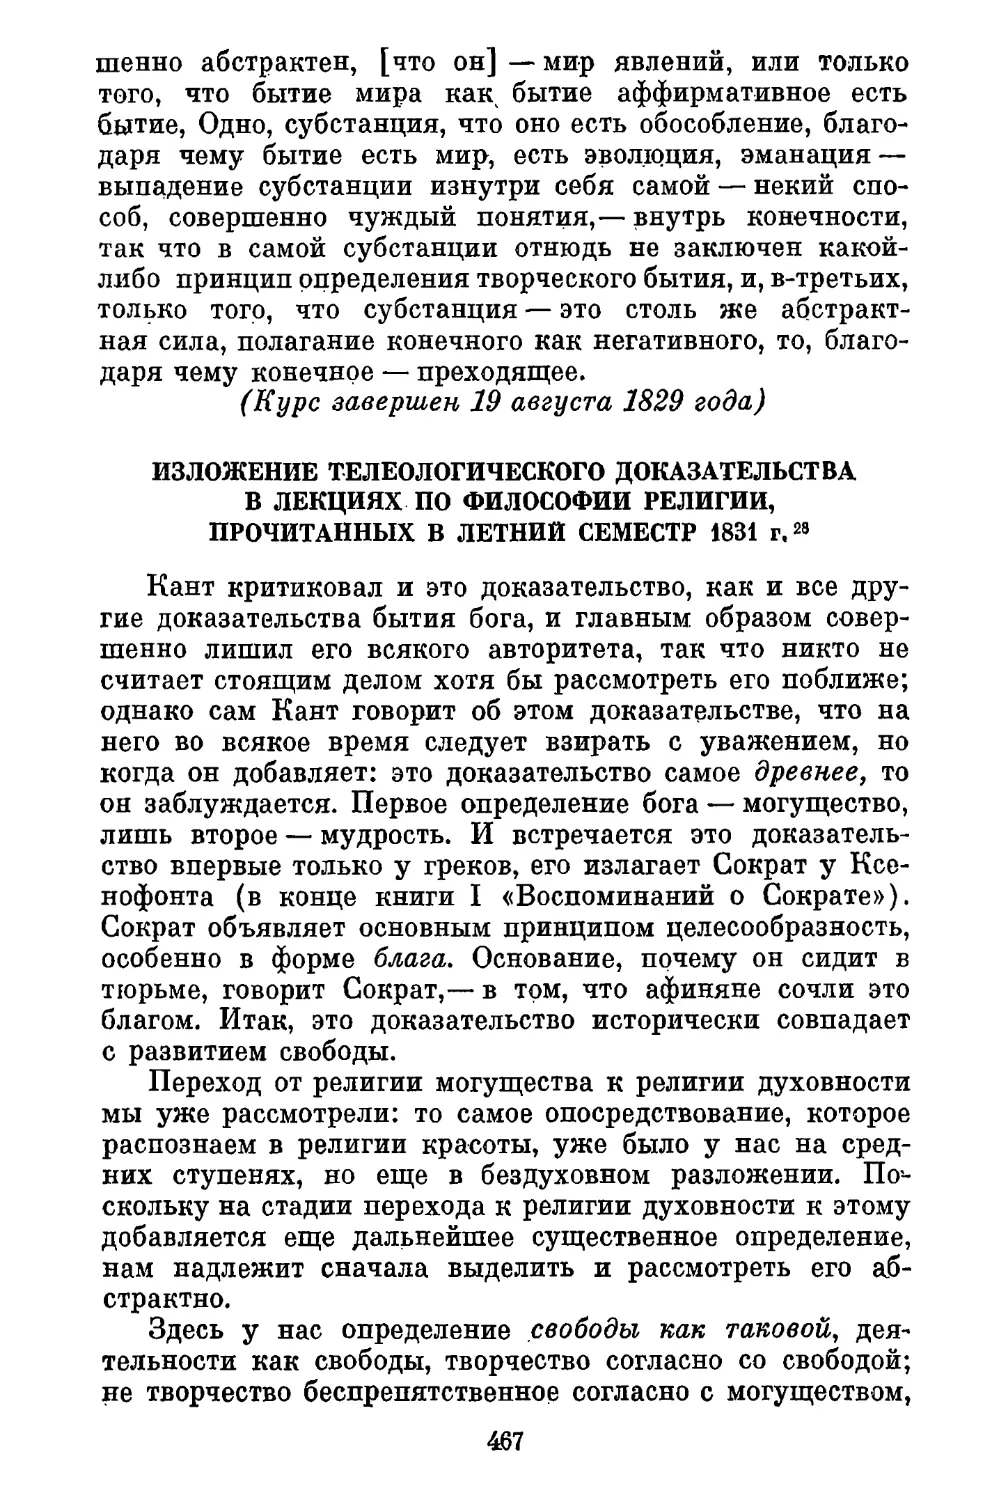 Изложение телеологического доказательства в лекциях по философии религии, прочитанных в летний семестр 1831 г.